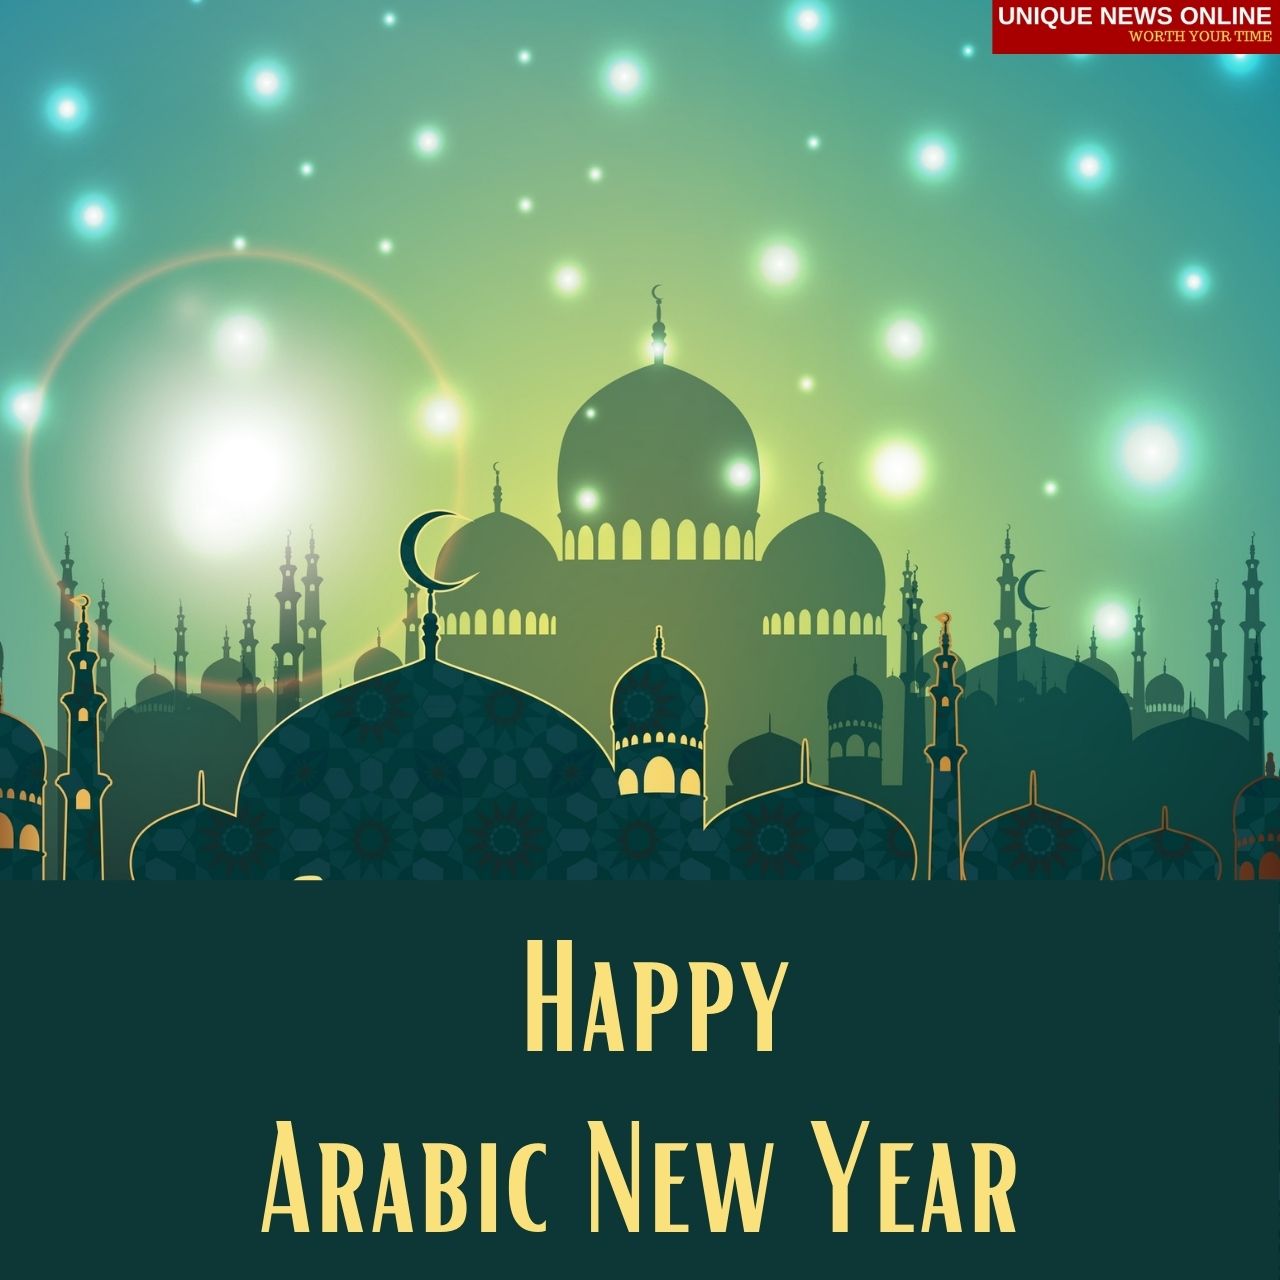 Arabic New Year 2021 WhatsApp Status Video to Download